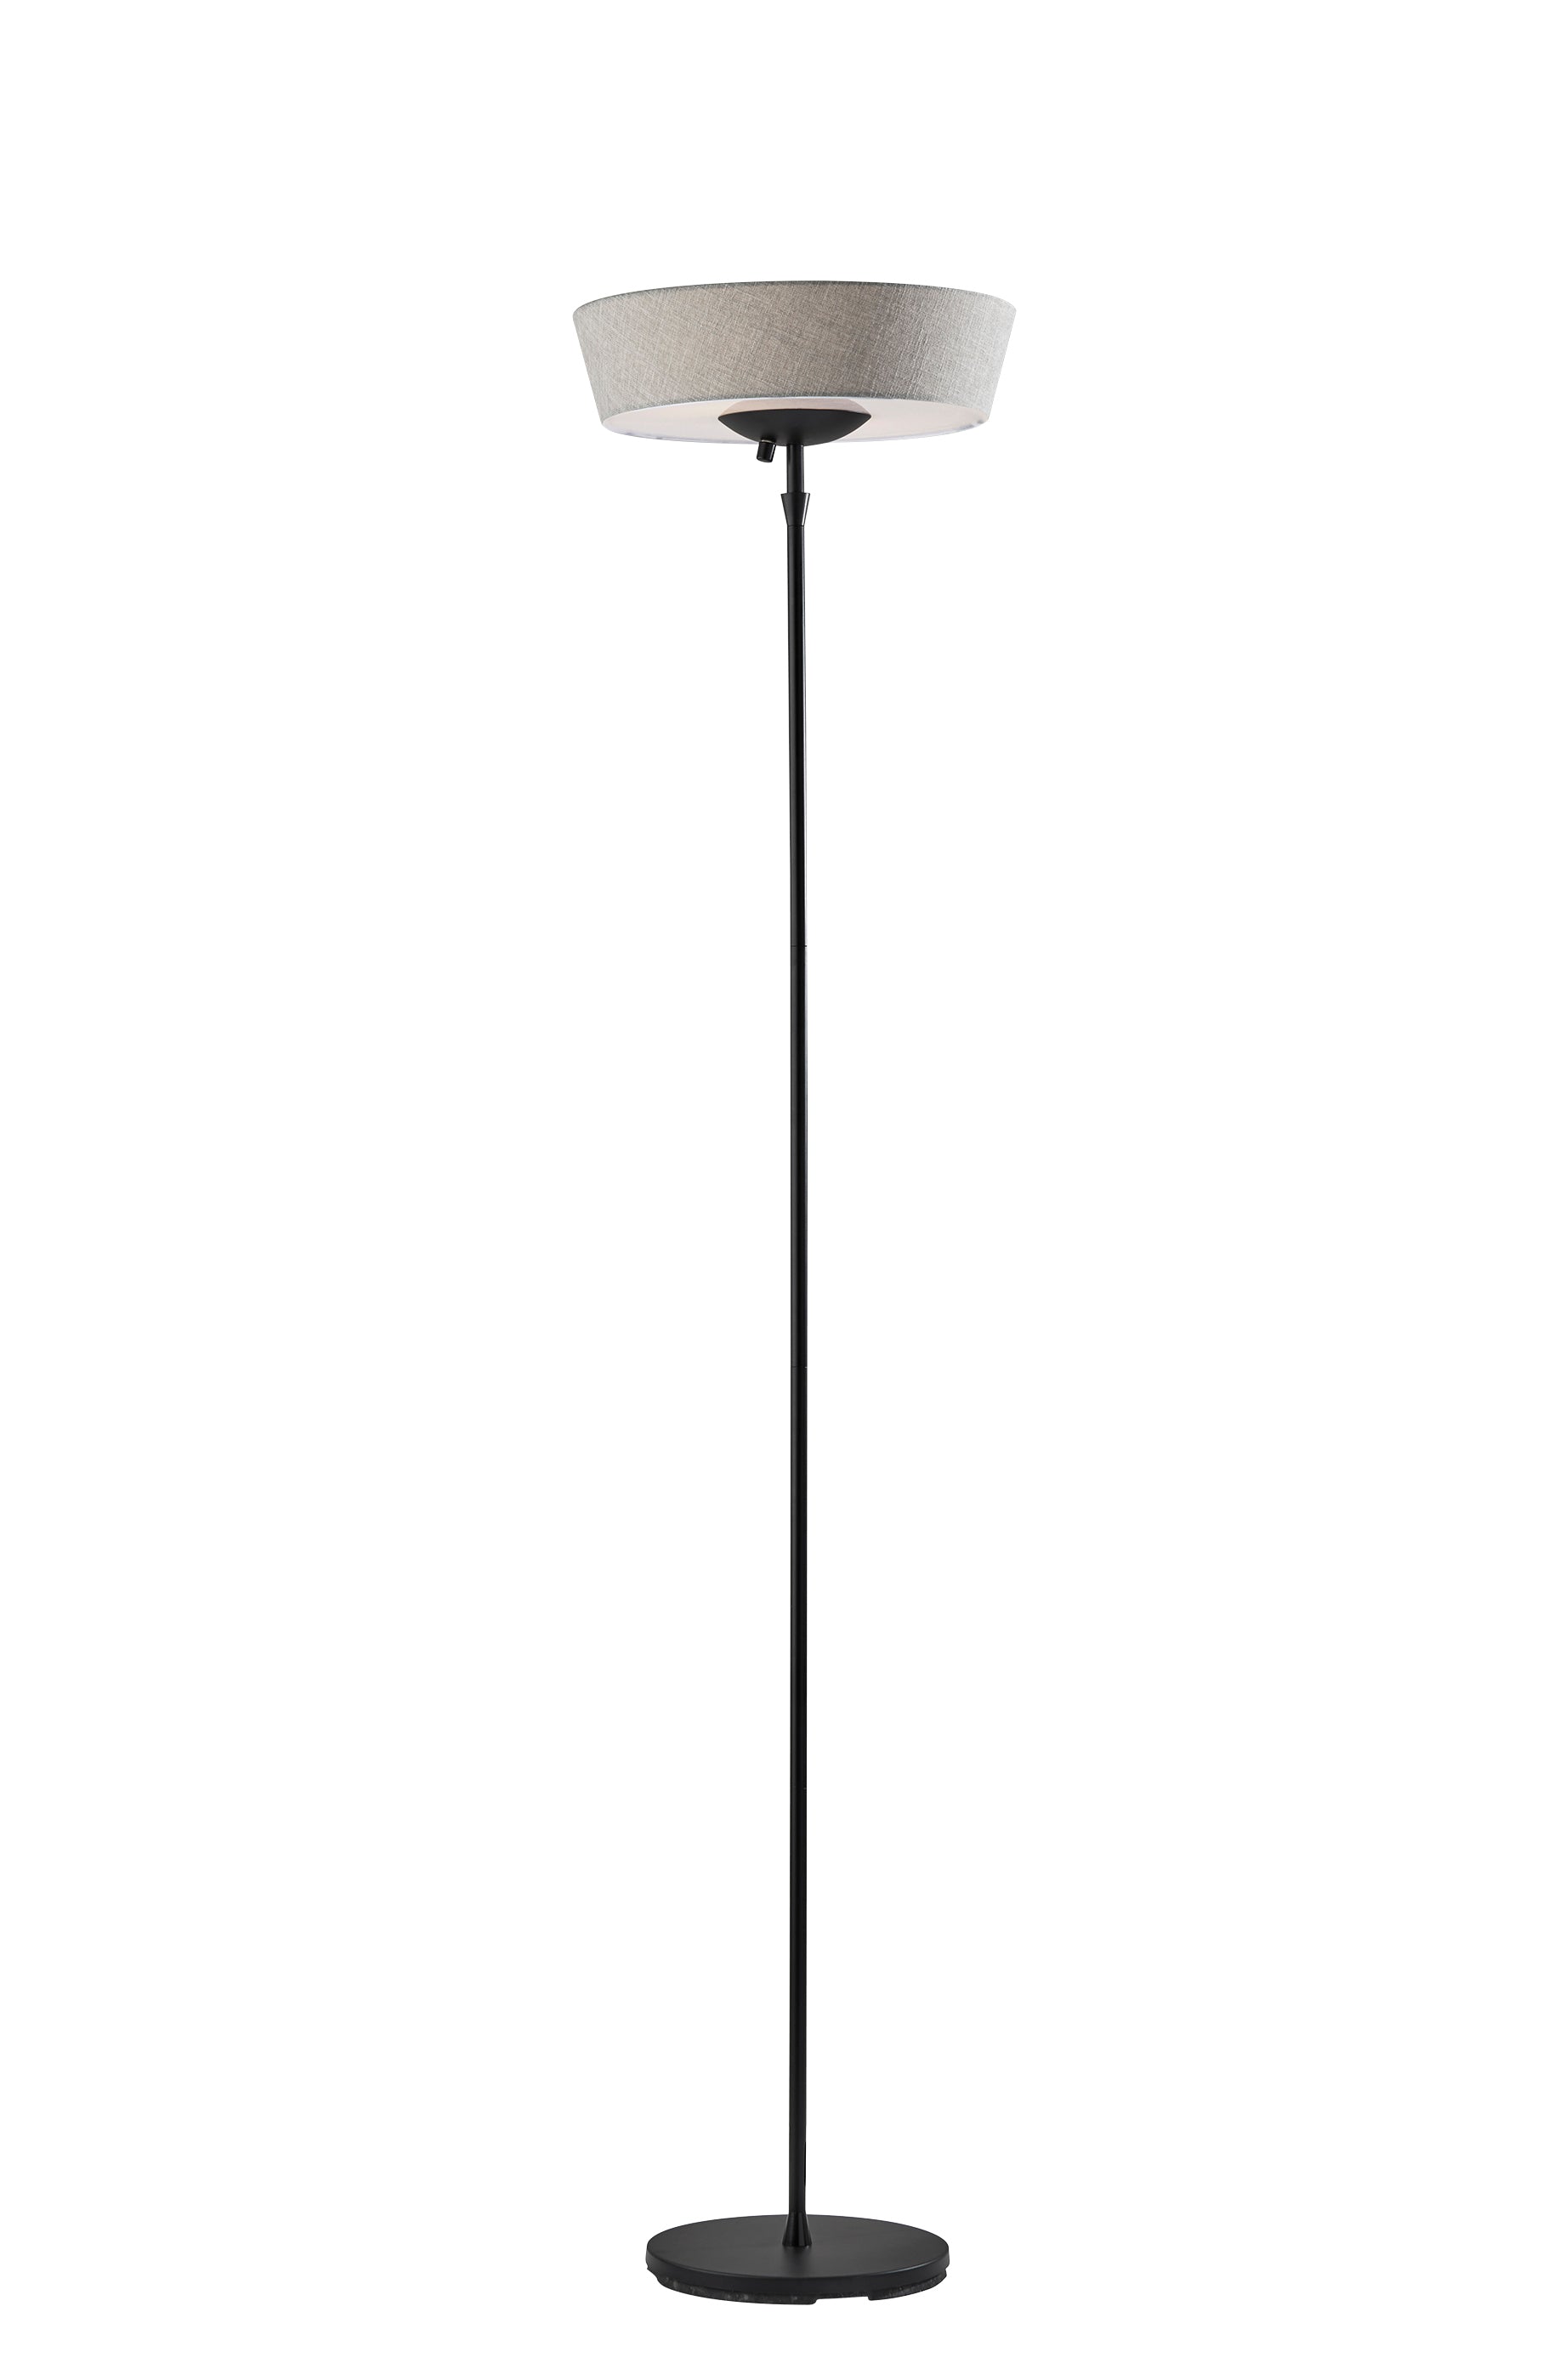 HARPER Lampe sur pied Noir - 5169-01 | ADESSO